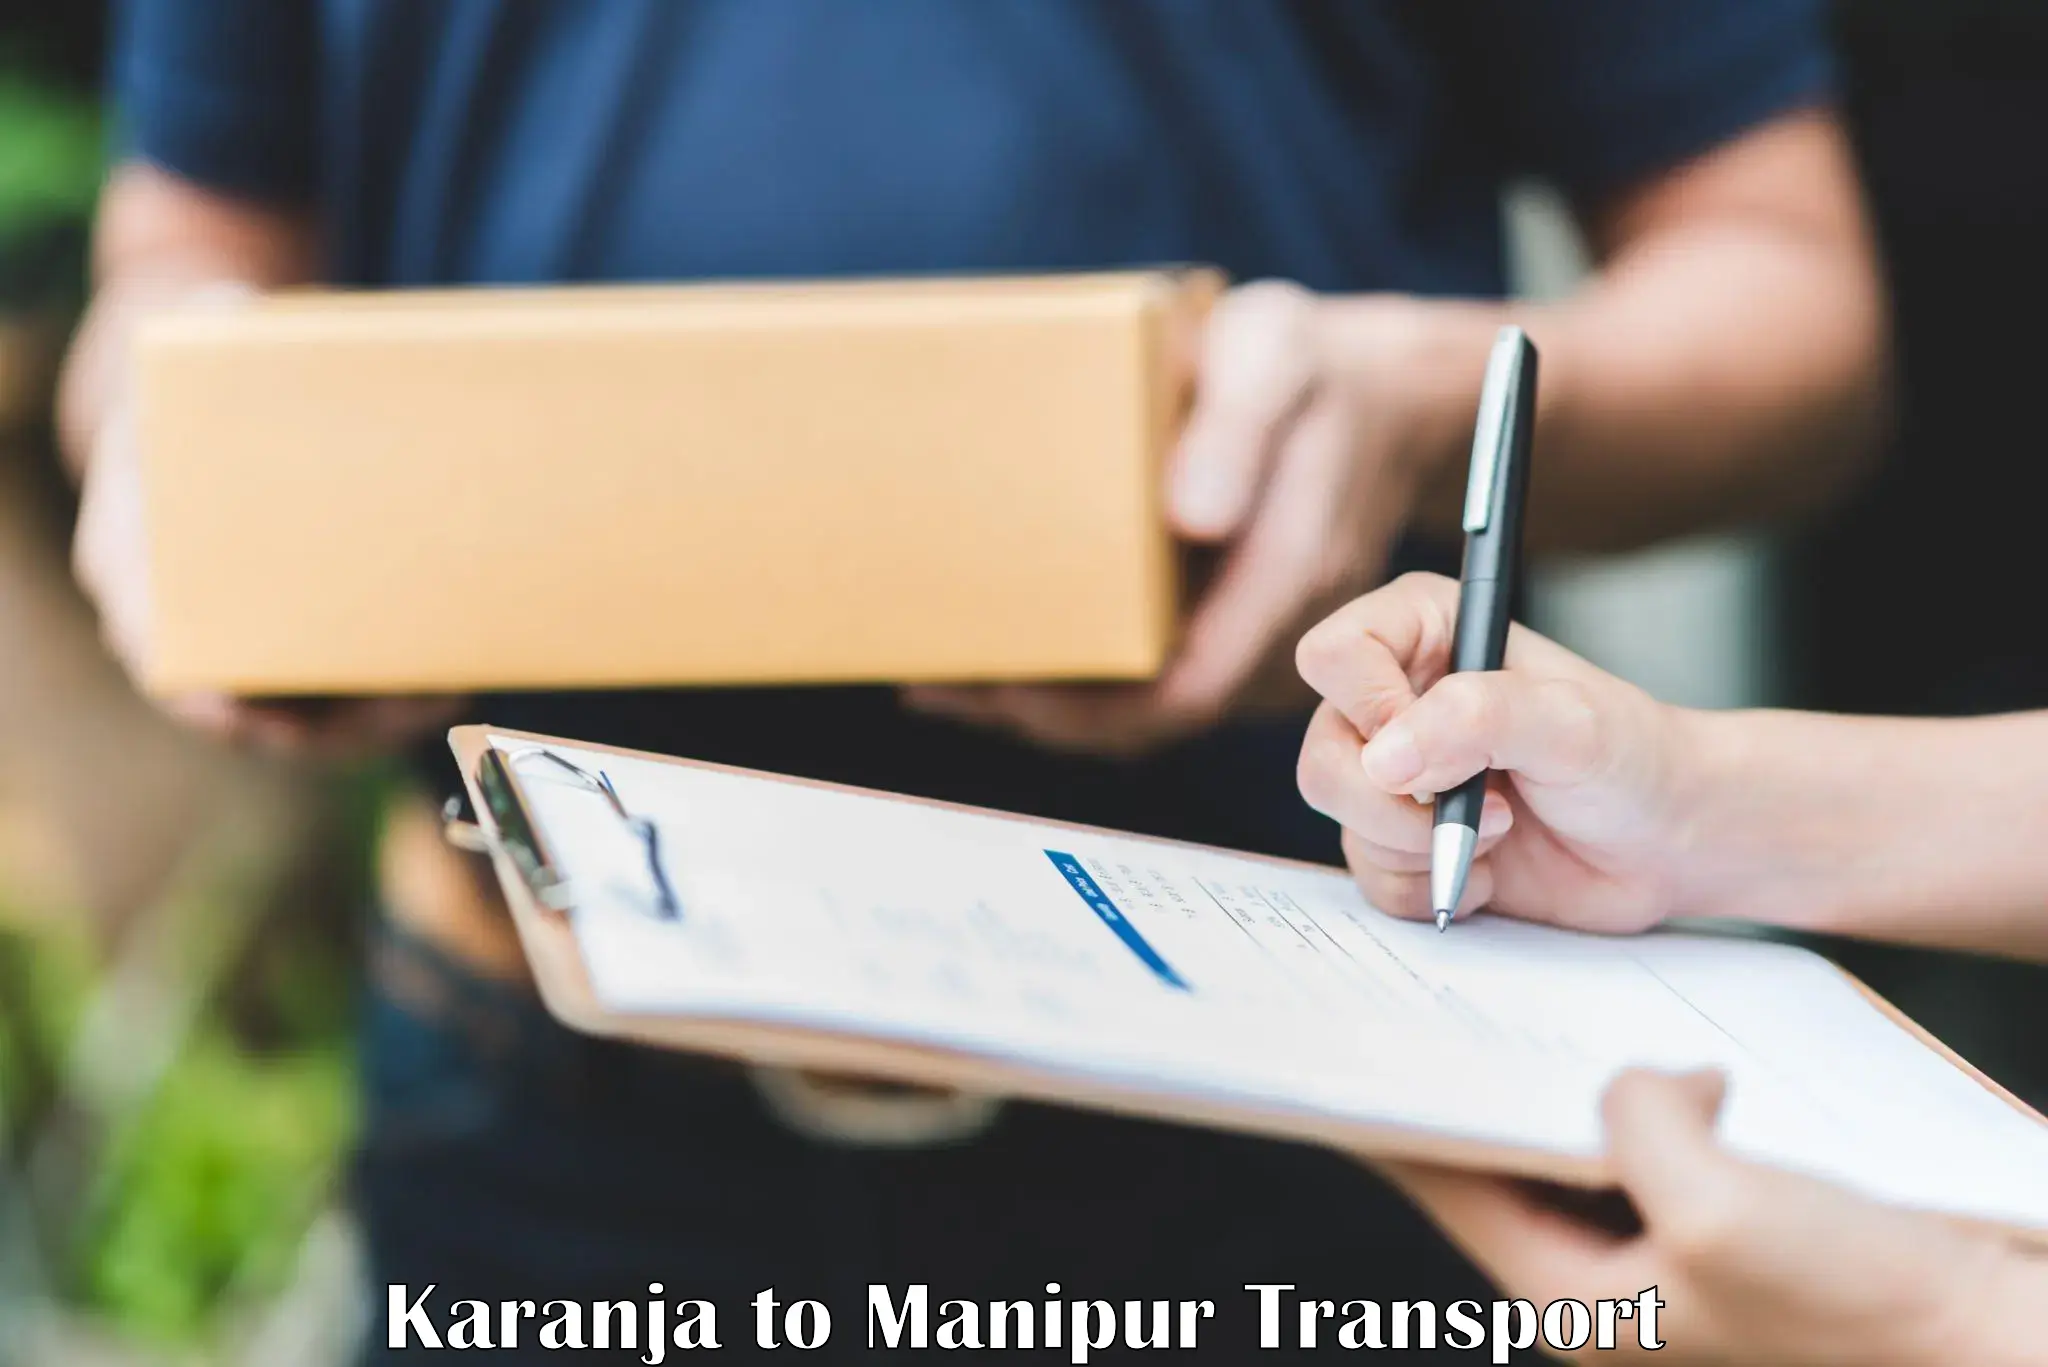 Furniture transport service Karanja to Manipur